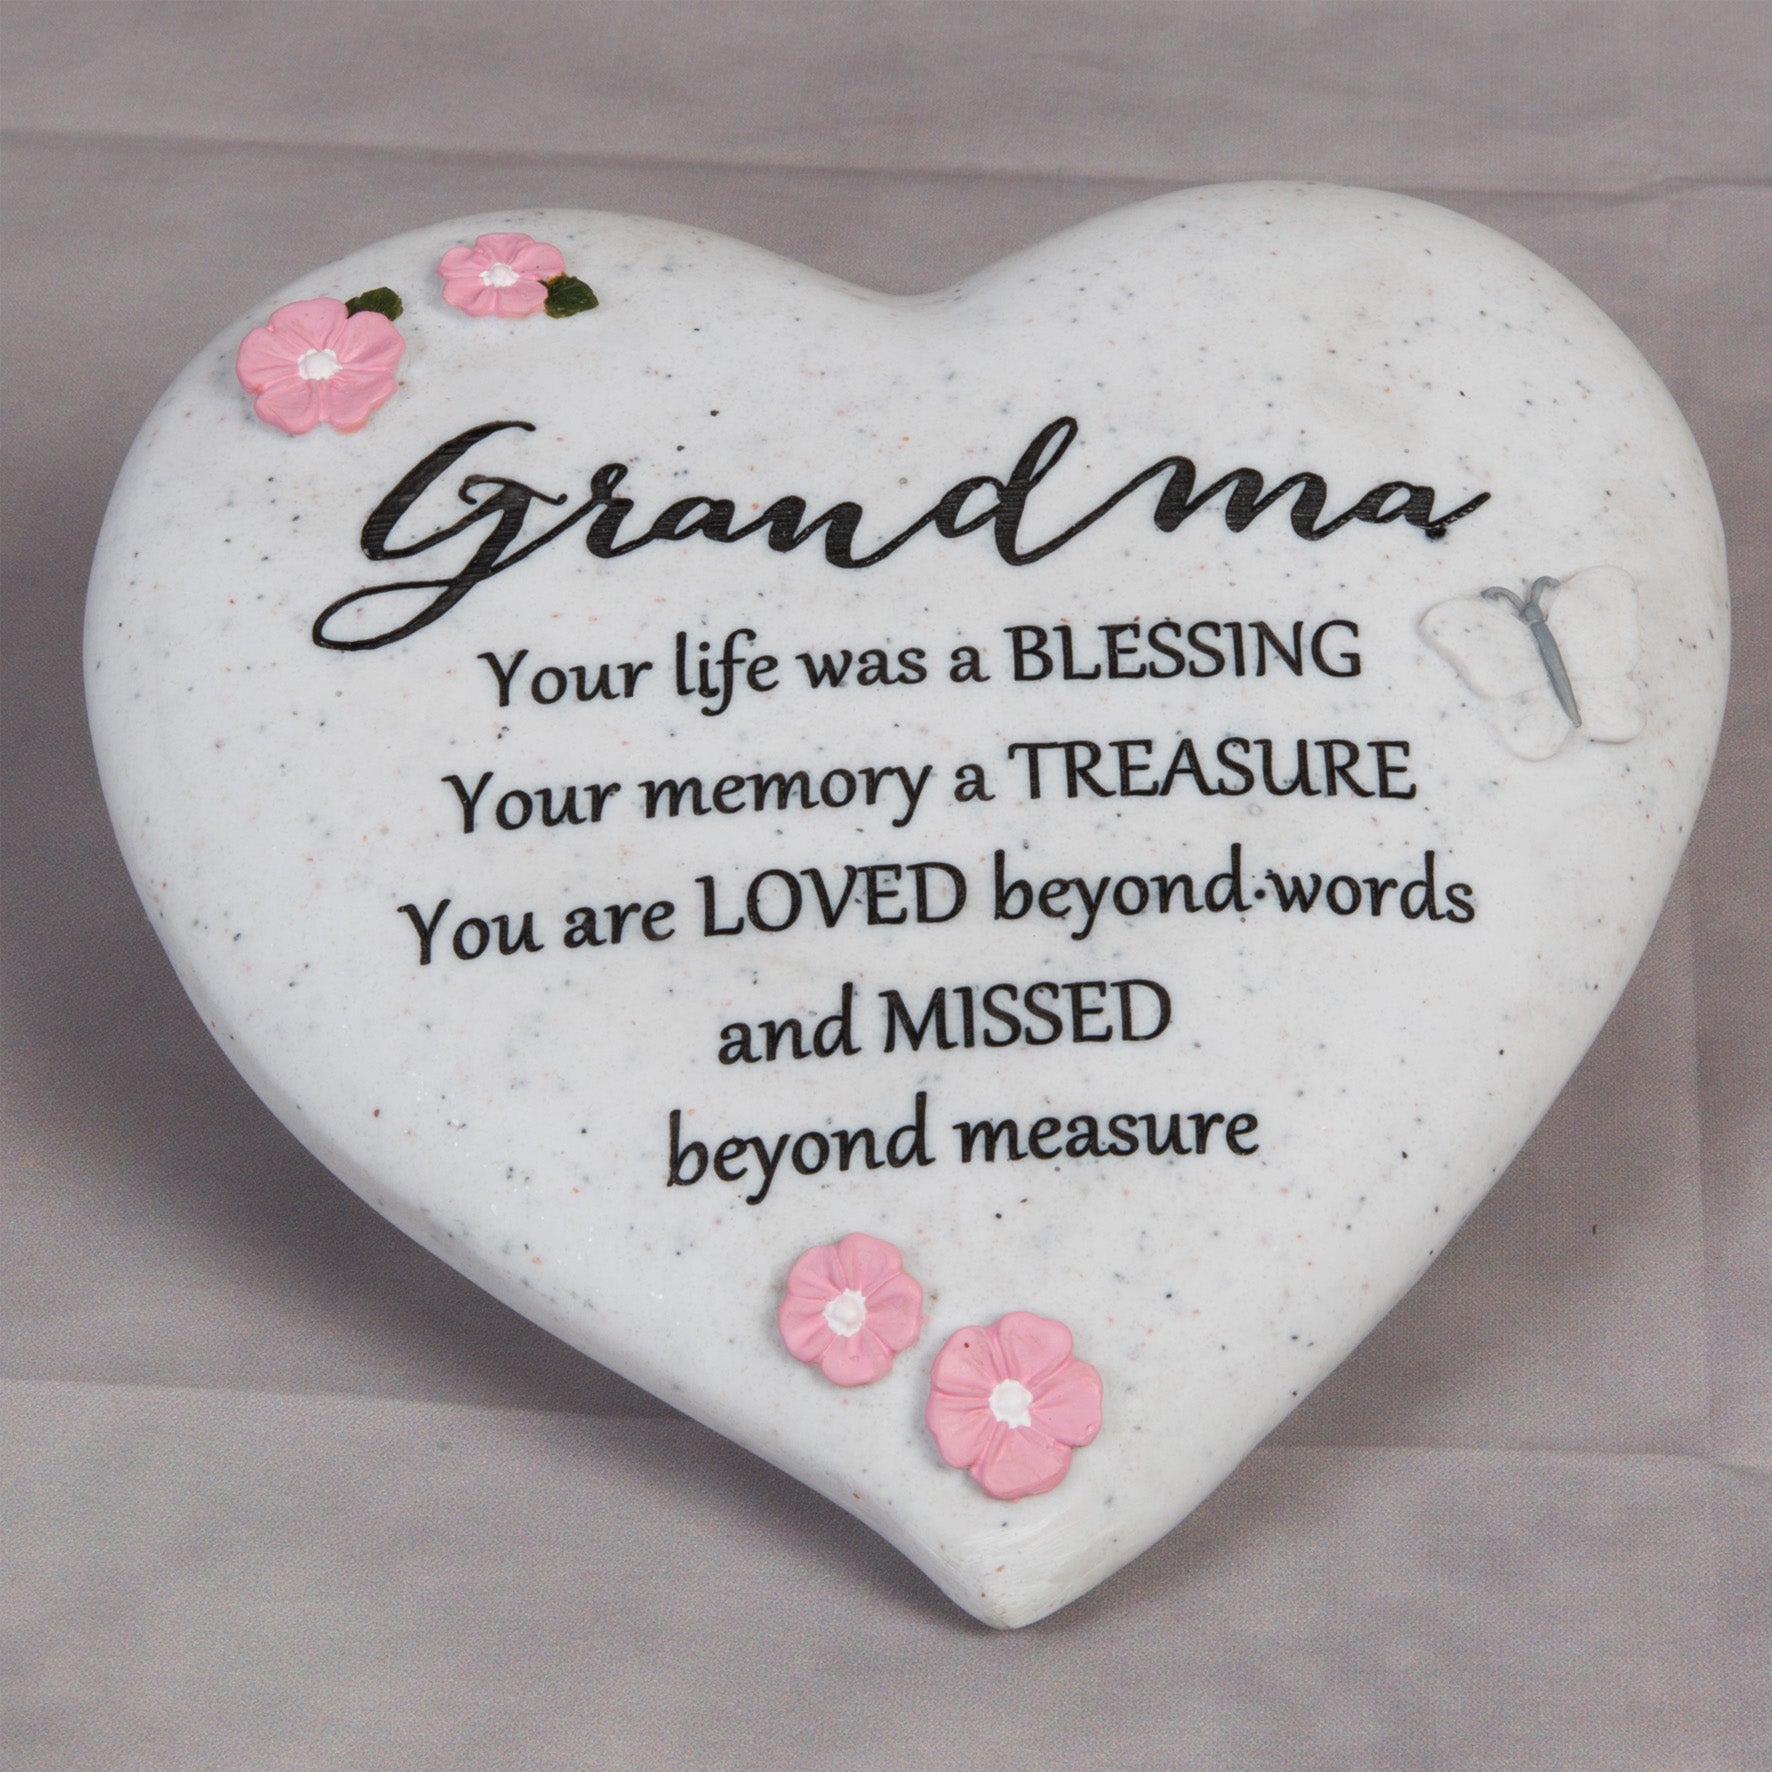 Widdop 62584 Memorial Heart Shaped Plaque - Grandma - Premium Memorial Giftware from Widdop Bingham - Just $12.95! Shop now at W Hurst & Son (IW) Ltd